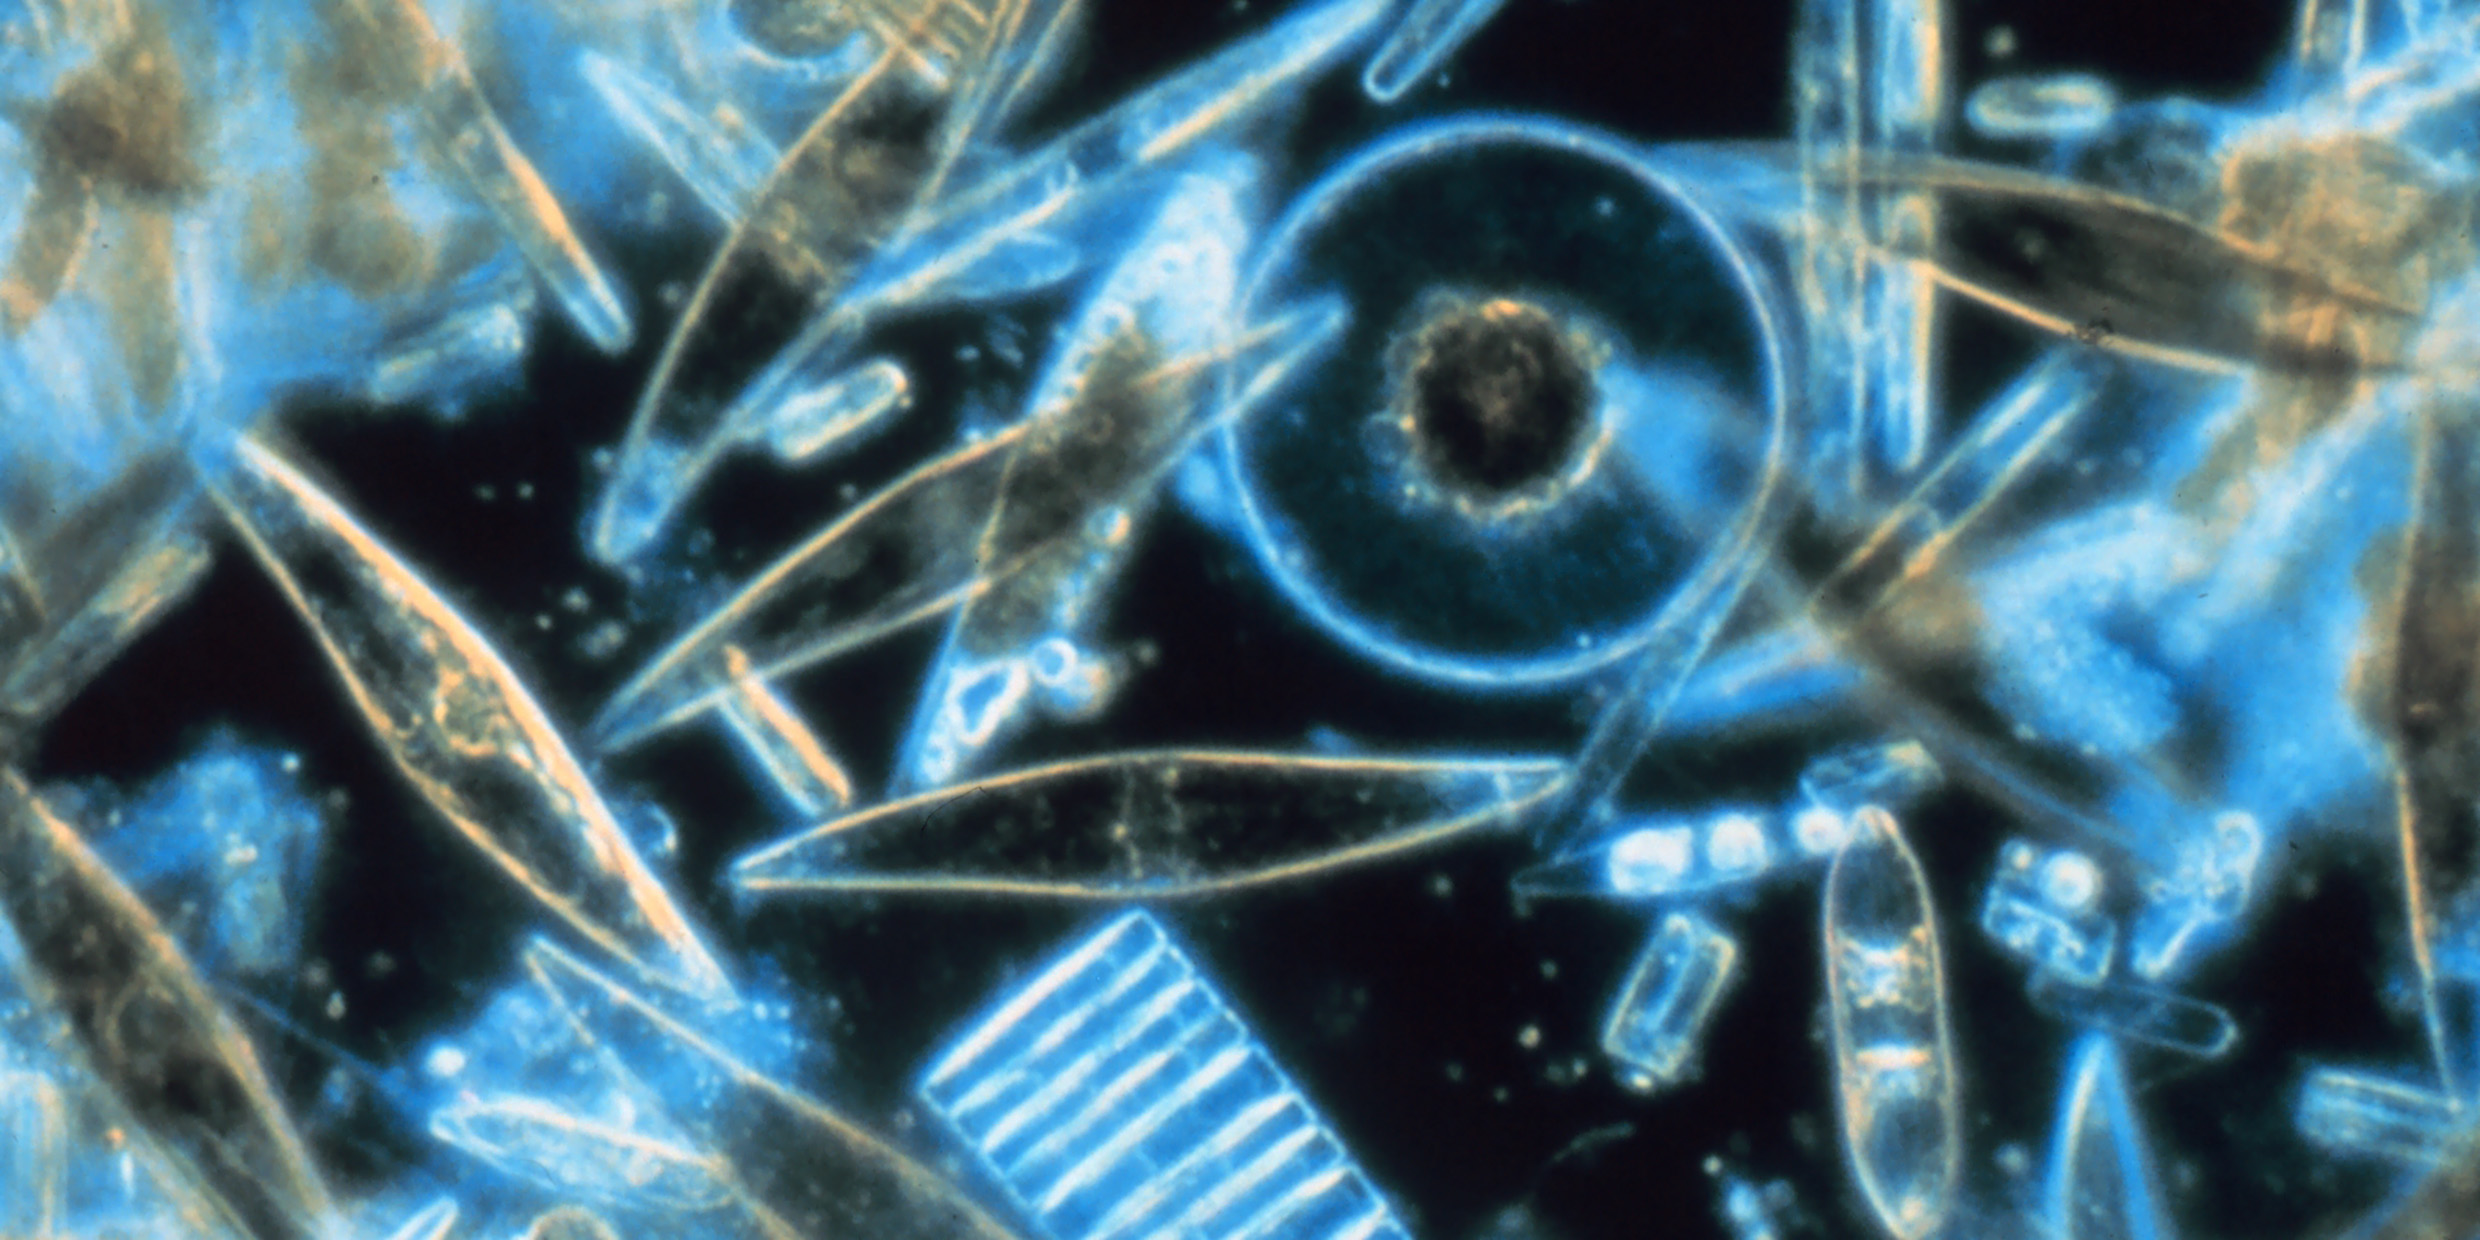 Image of microscopic diatoms